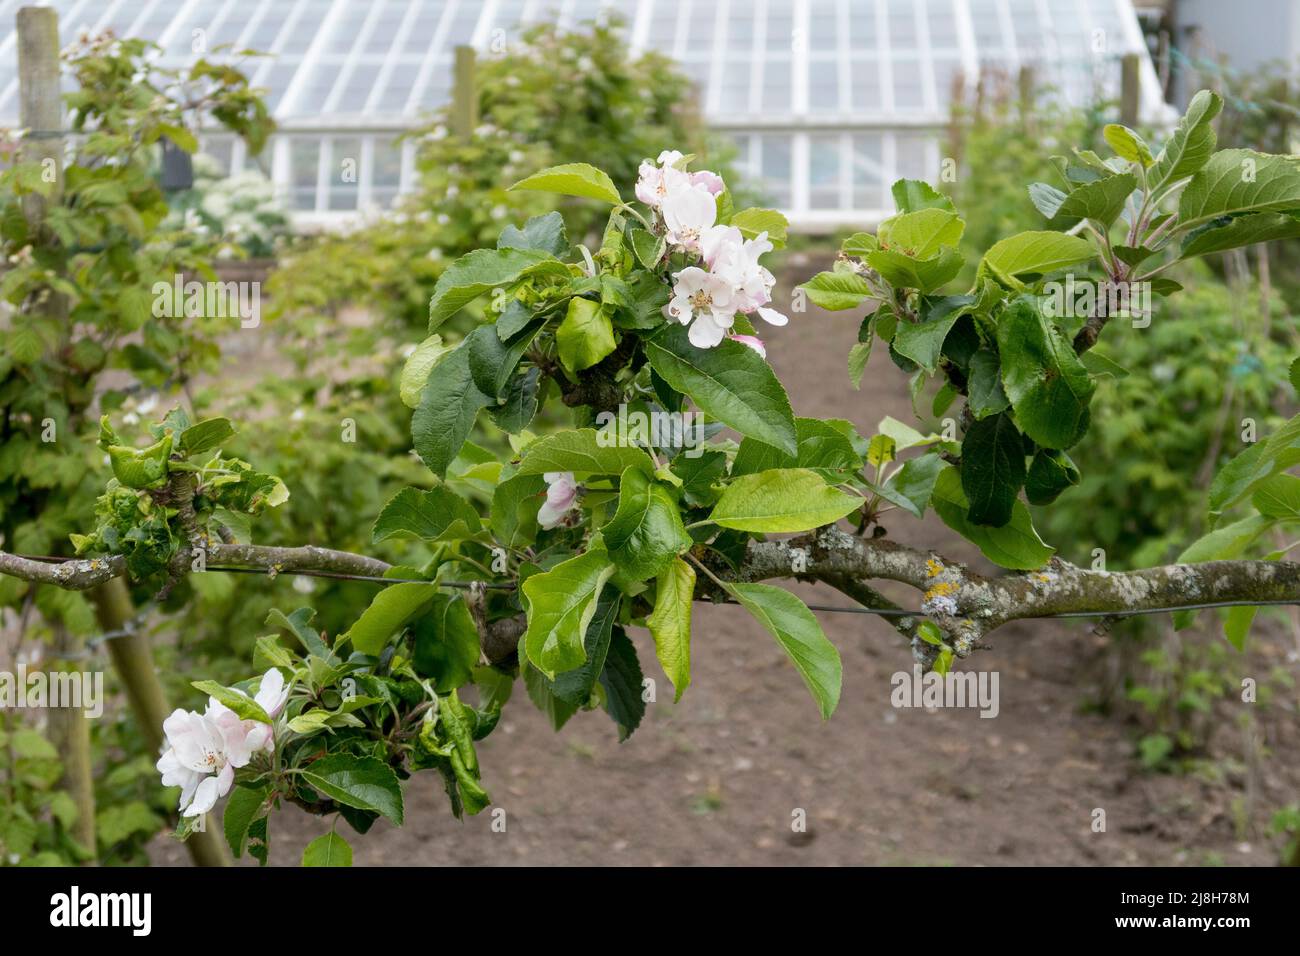 Fiore di mele fiorito in vecchio giardino inglese murato Foto Stock